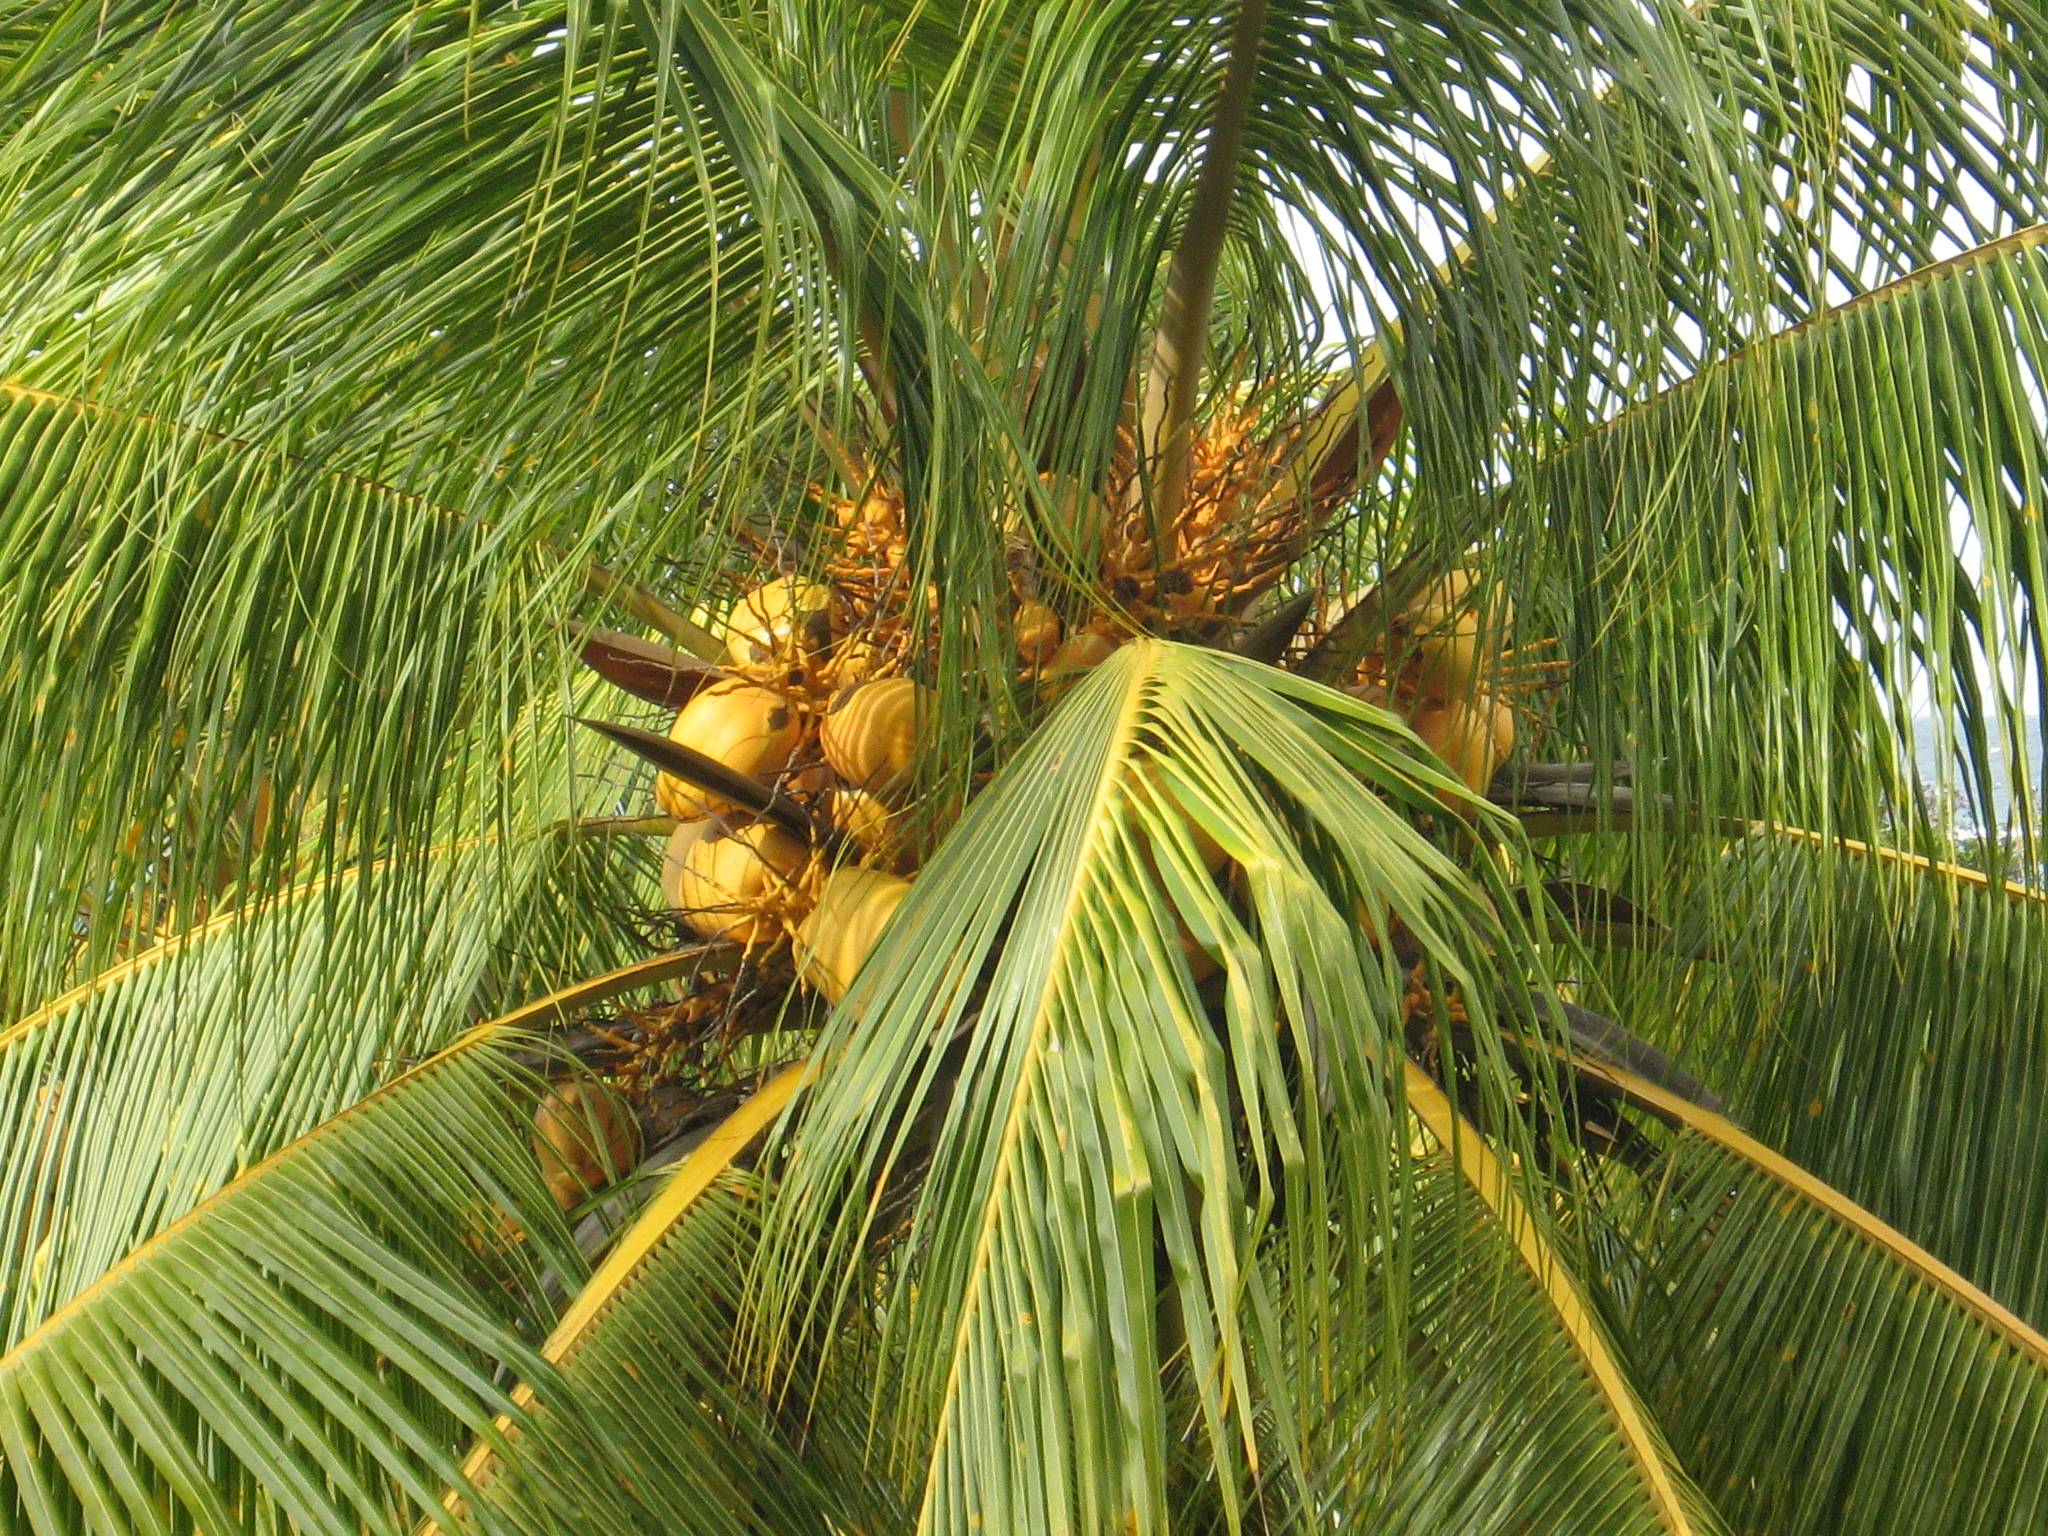 Как вырастить кокосовую пальму - древология - все о древесине, строительстве, ремонте, интерьере